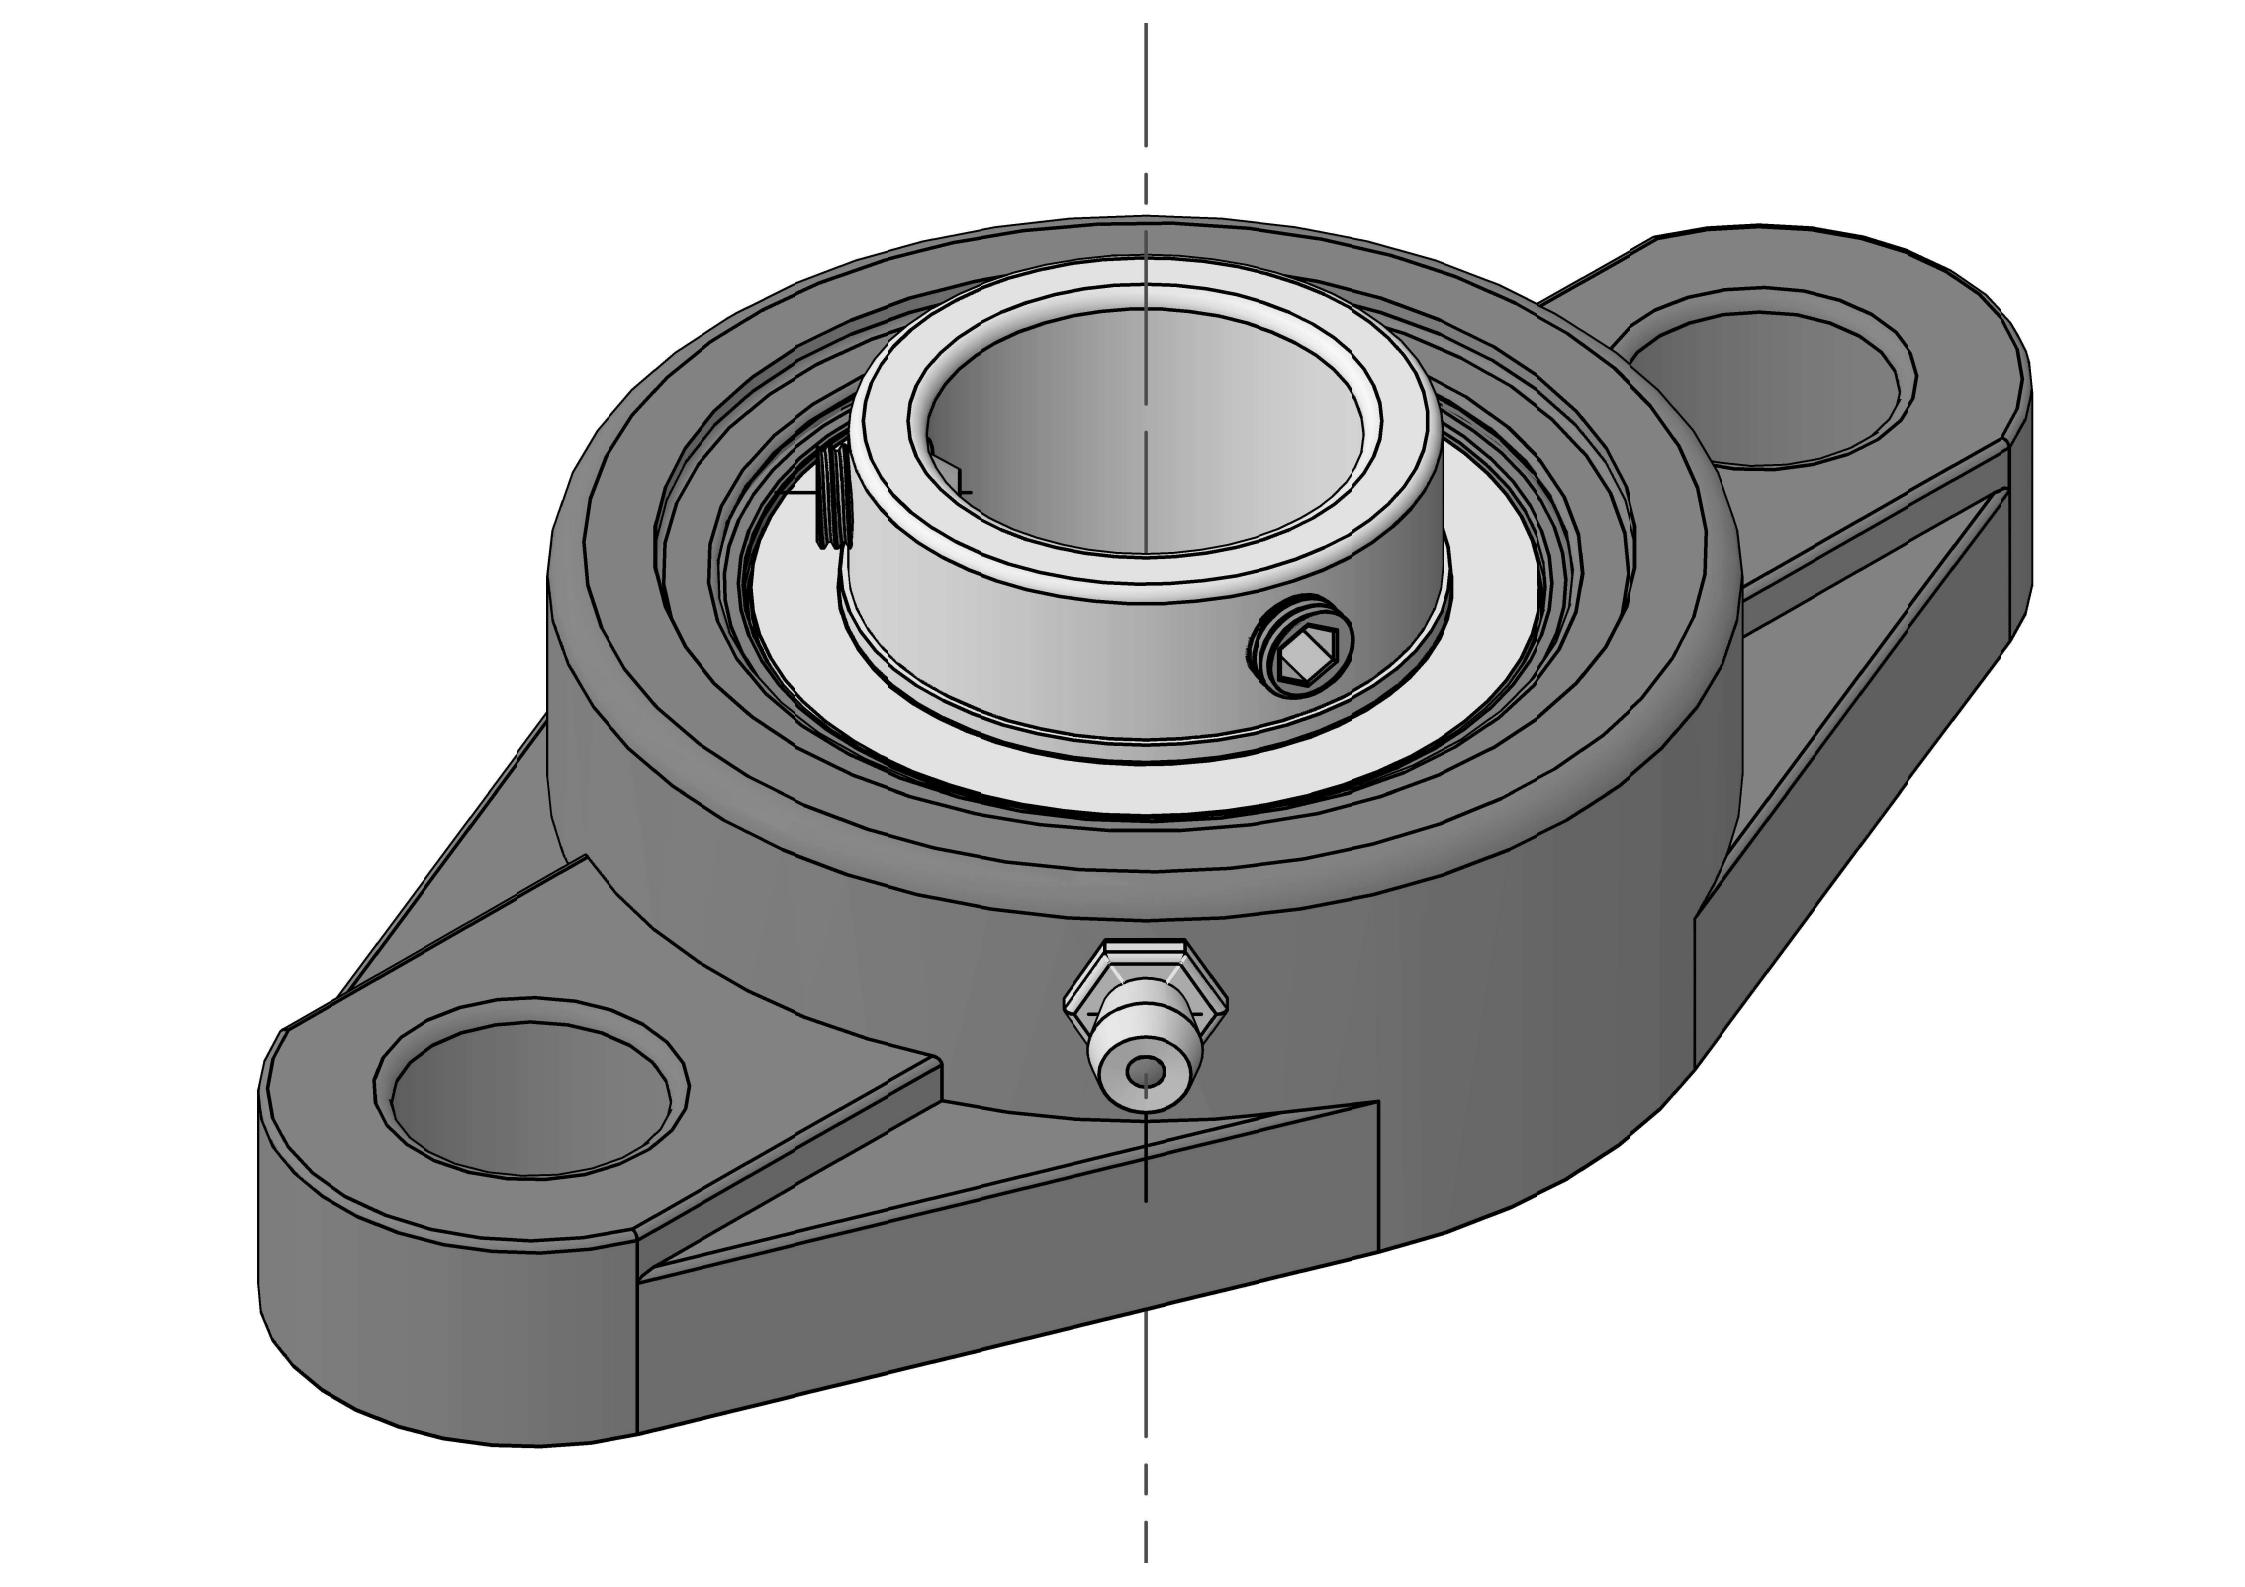 UCFL308-24 Duha ka Bolt Oval Flange bearing Units nga adunay 1-1 / 2 pulgada nga bore